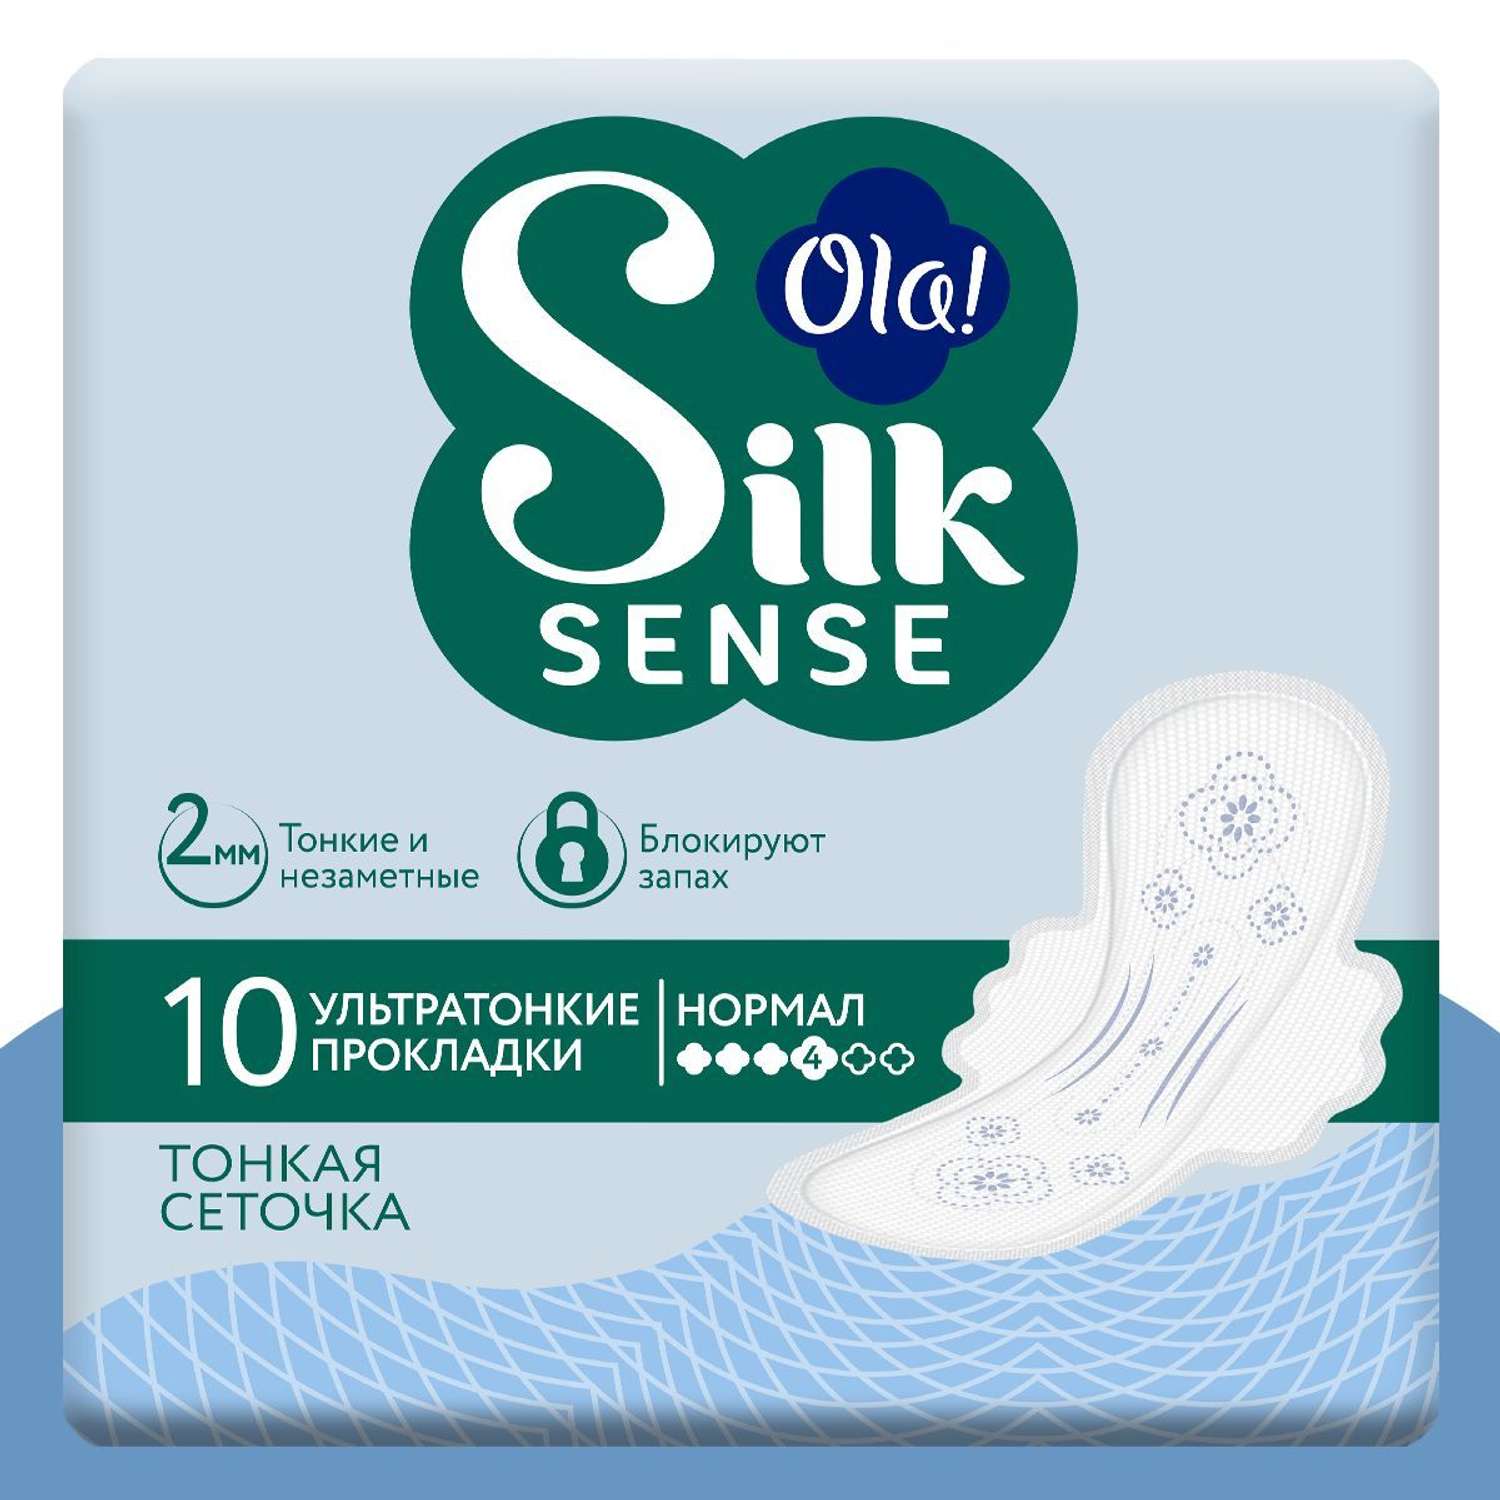 Ультратонкие прокладки Ola! с крылышками Silk Sense Нормал поверхность сеточка без аромата 20 шт 2 уп по 10 шт - фото 2